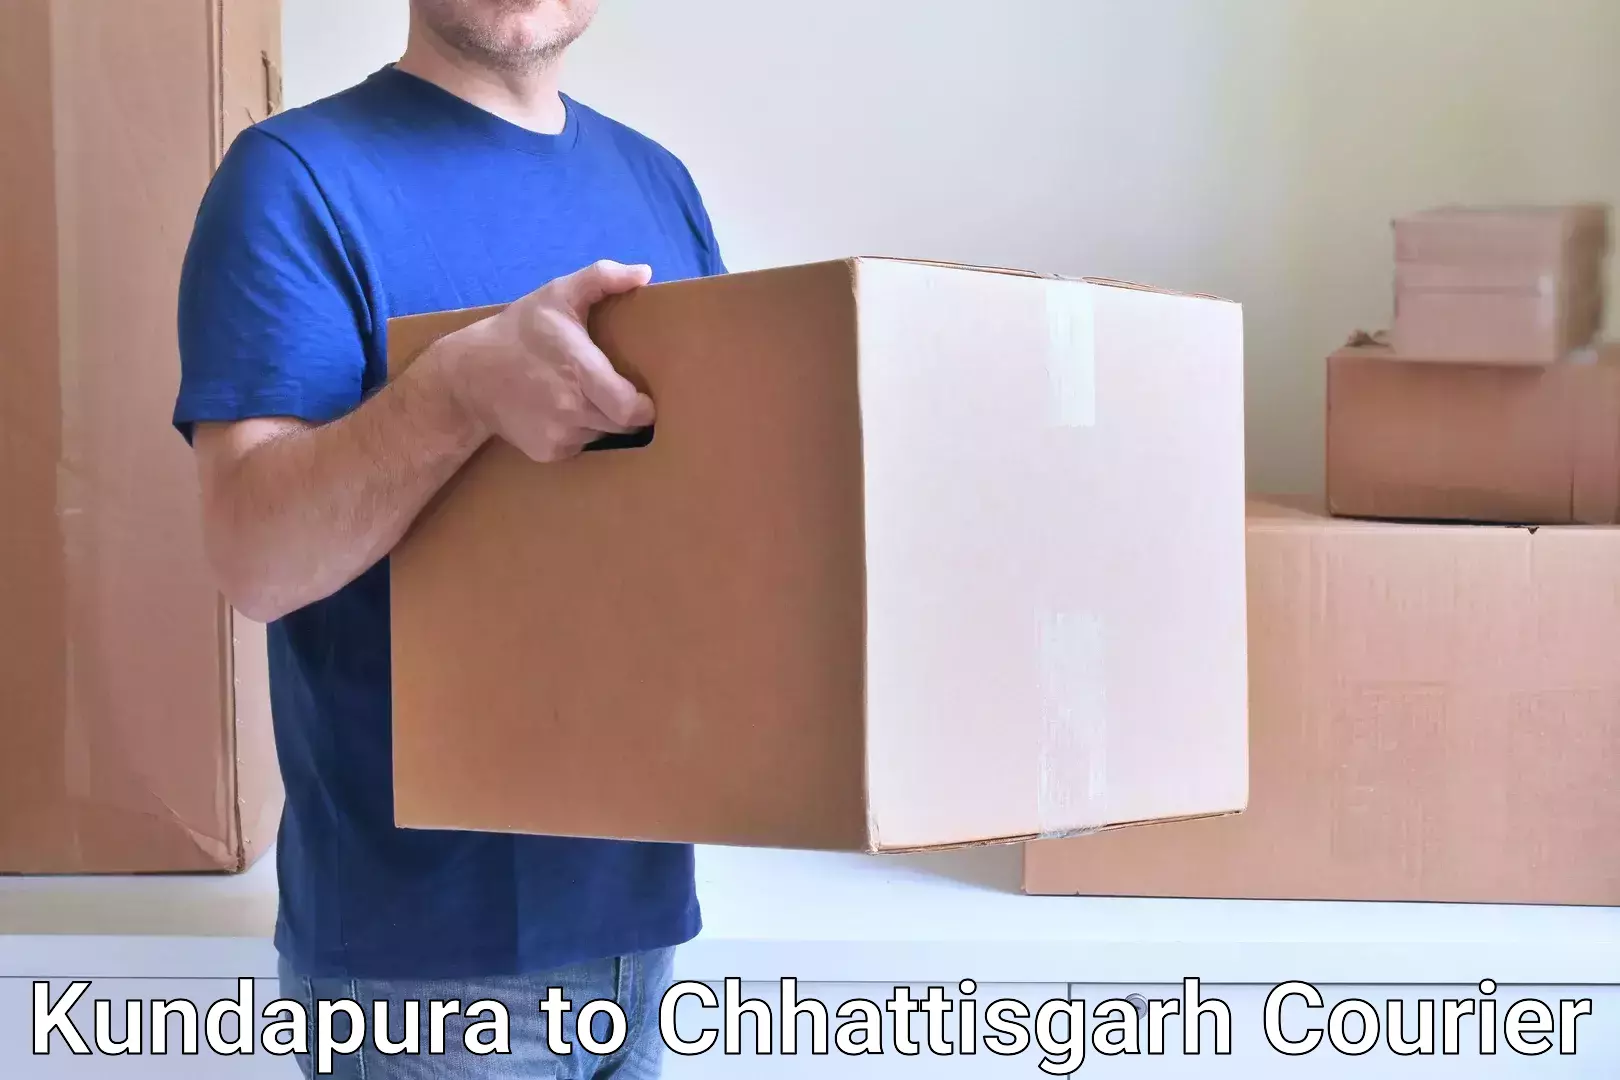 Seamless shipping experience Kundapura to Raigarh Chhattisgarh